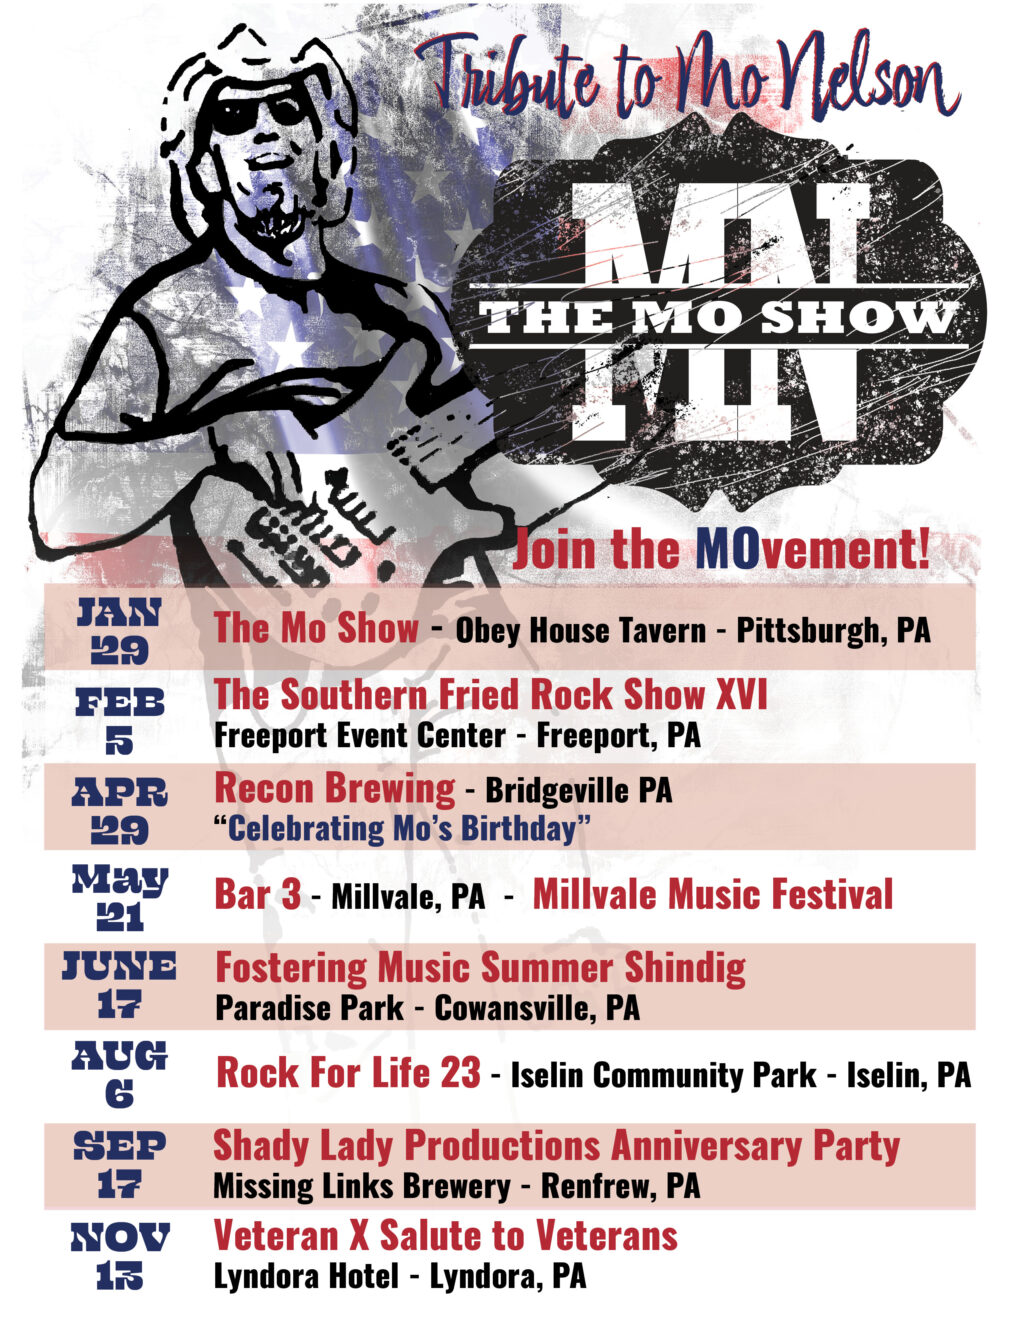 The Mo Show Tour Info